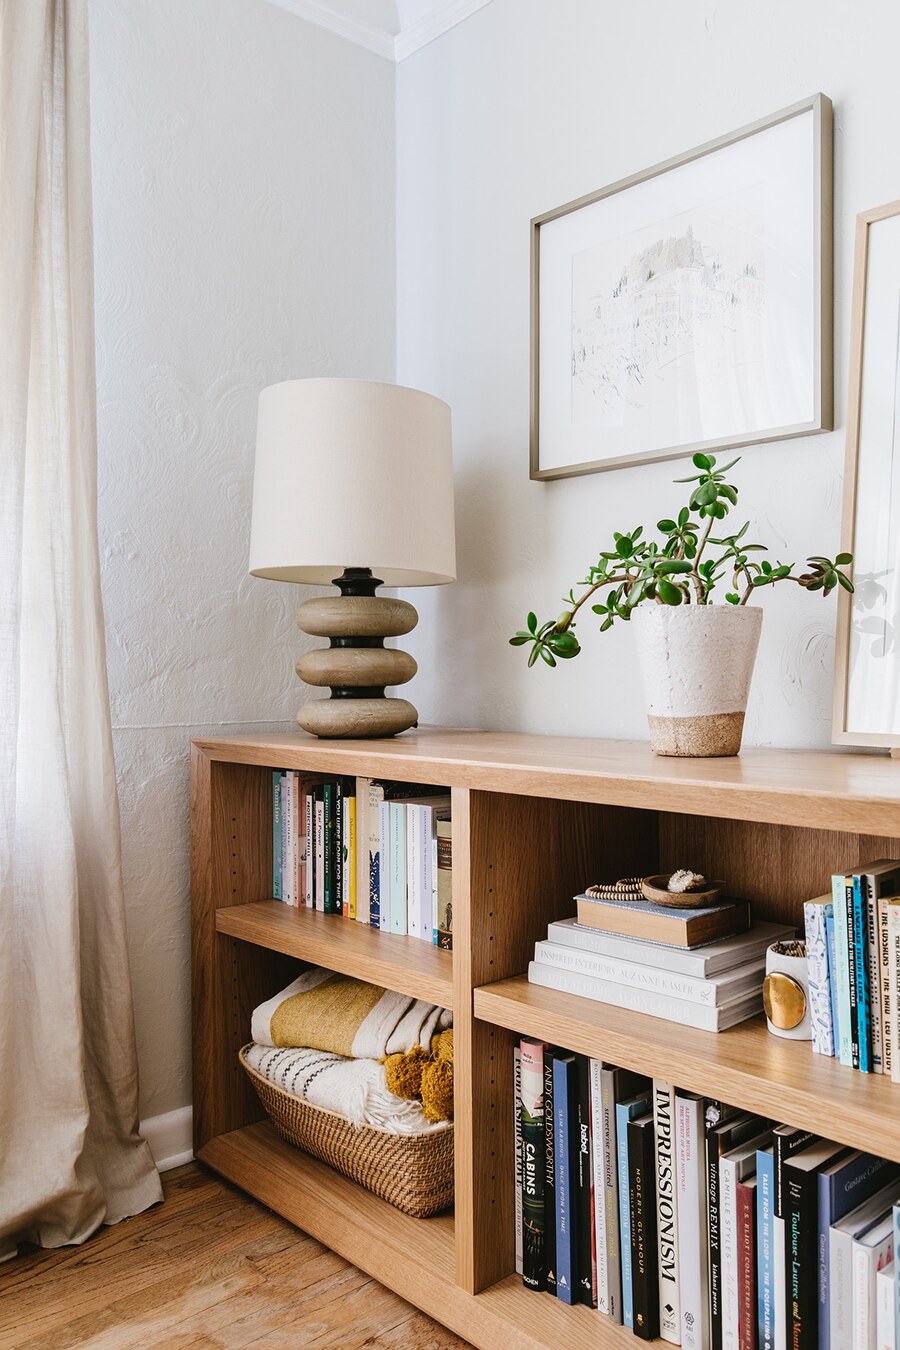 Una estantería baja de madera con libros y adornos, como una canasta con textiles, una lámpara y una planta.